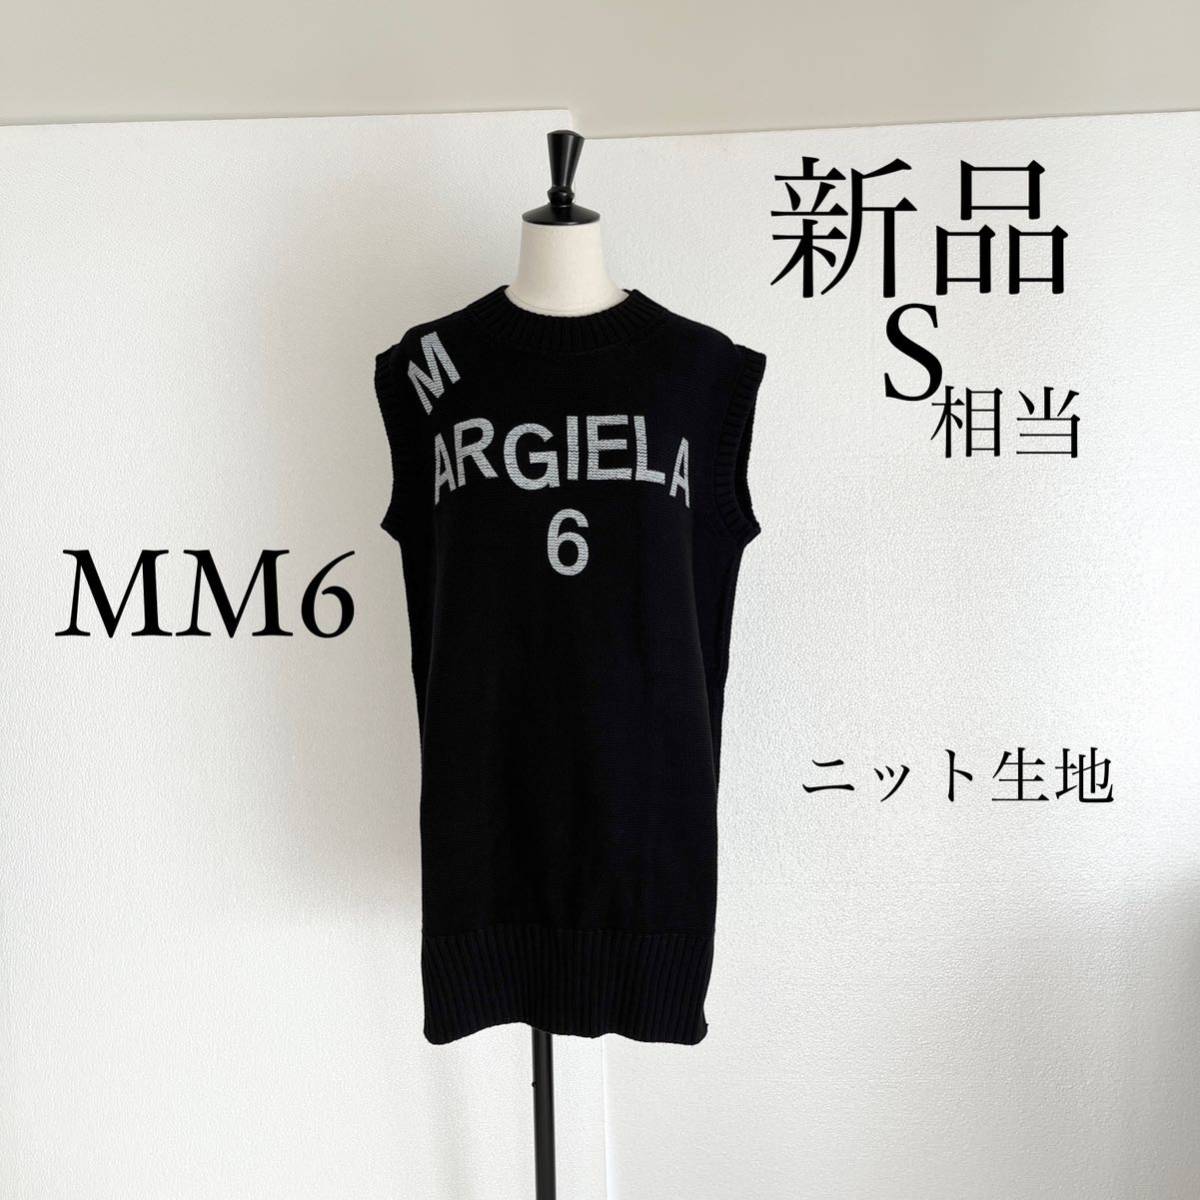 MM6 Maison Margielaマルジェラ ロゴ入り ニットワンピース 黒